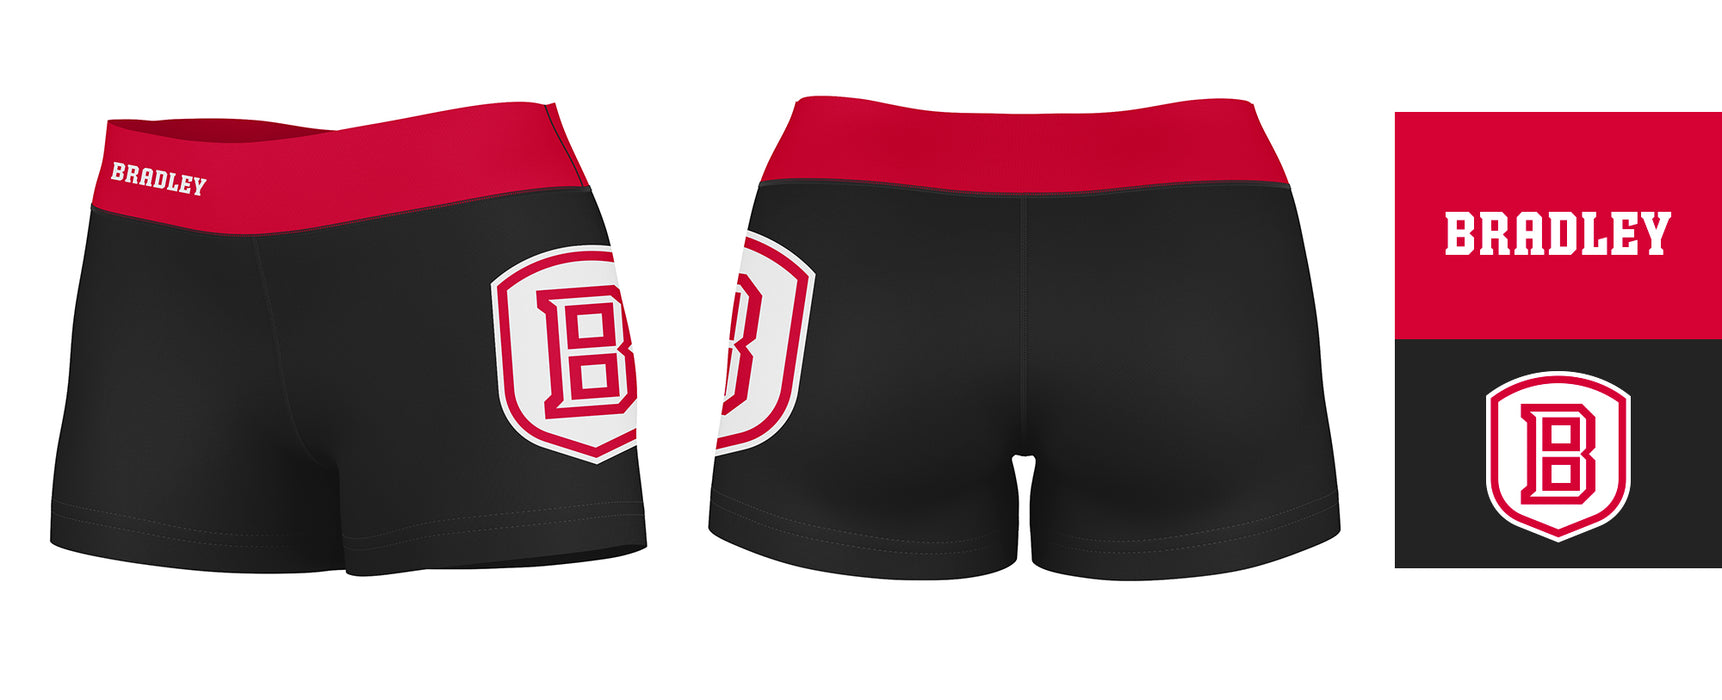 Bradley Braves Vive La Fete Logo on Thigh & Waistband Black & Red Women Yoga Booty Workout Shorts 3.75 Inseam - Vive La Fête - Online Apparel Store